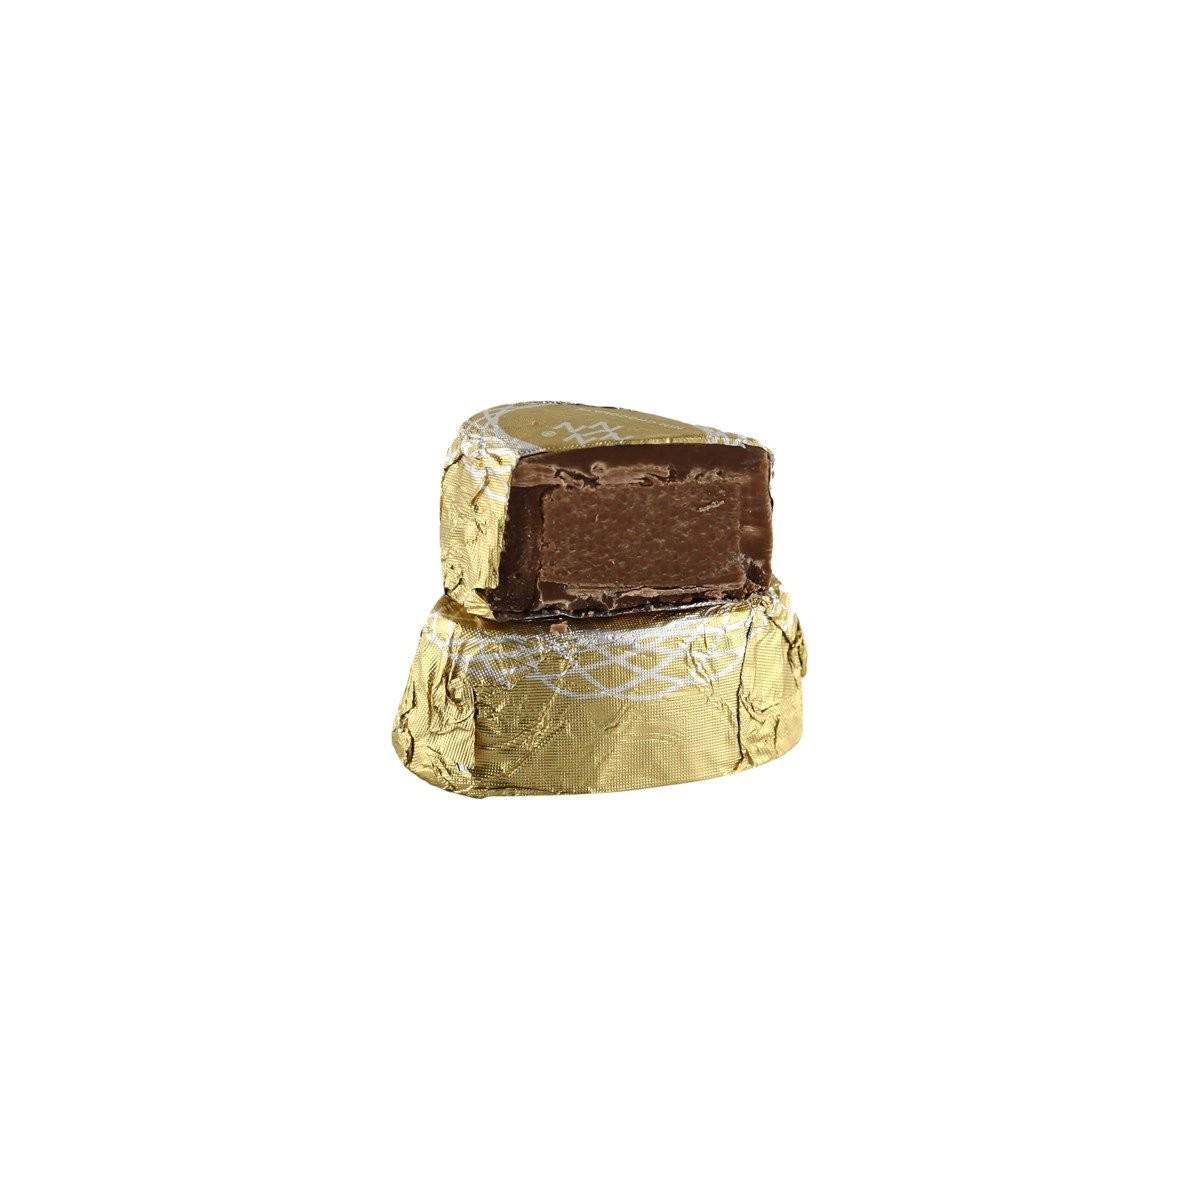 Belçika Çikolatası Fındık Dolgulu 500g